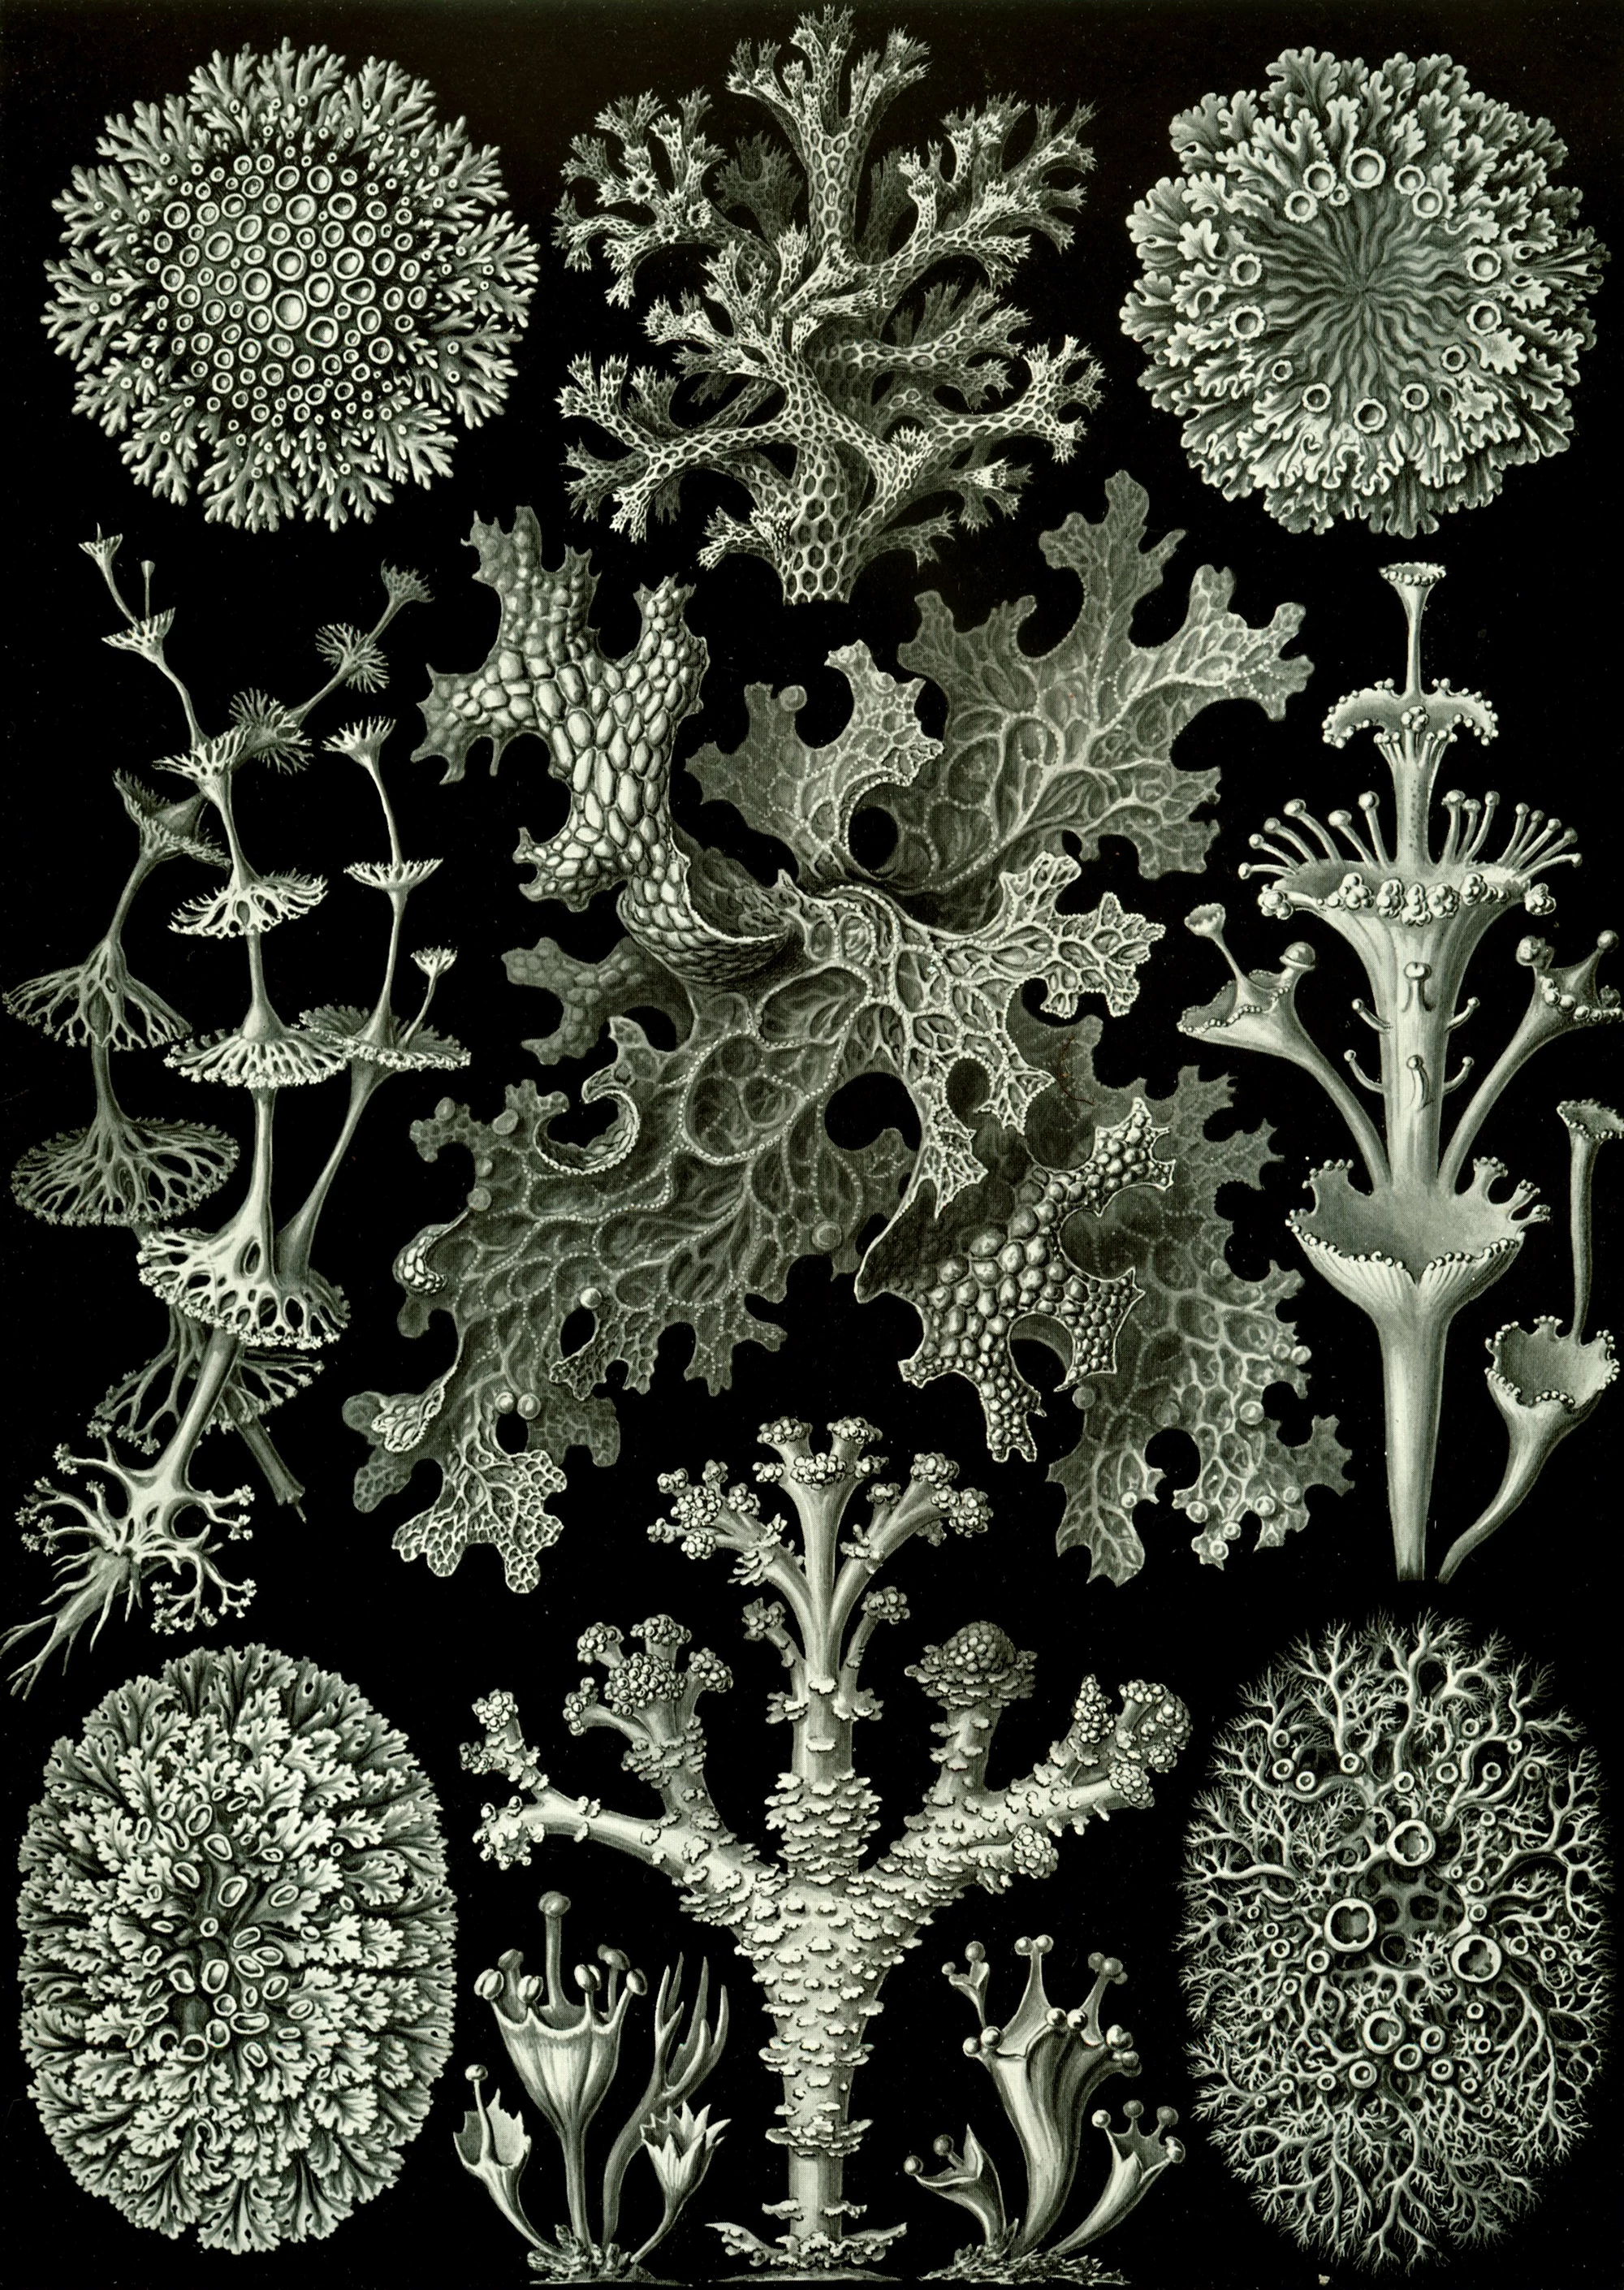 Art Forms in Nature, Plate 83: Lichenes, Ernst Haeckel